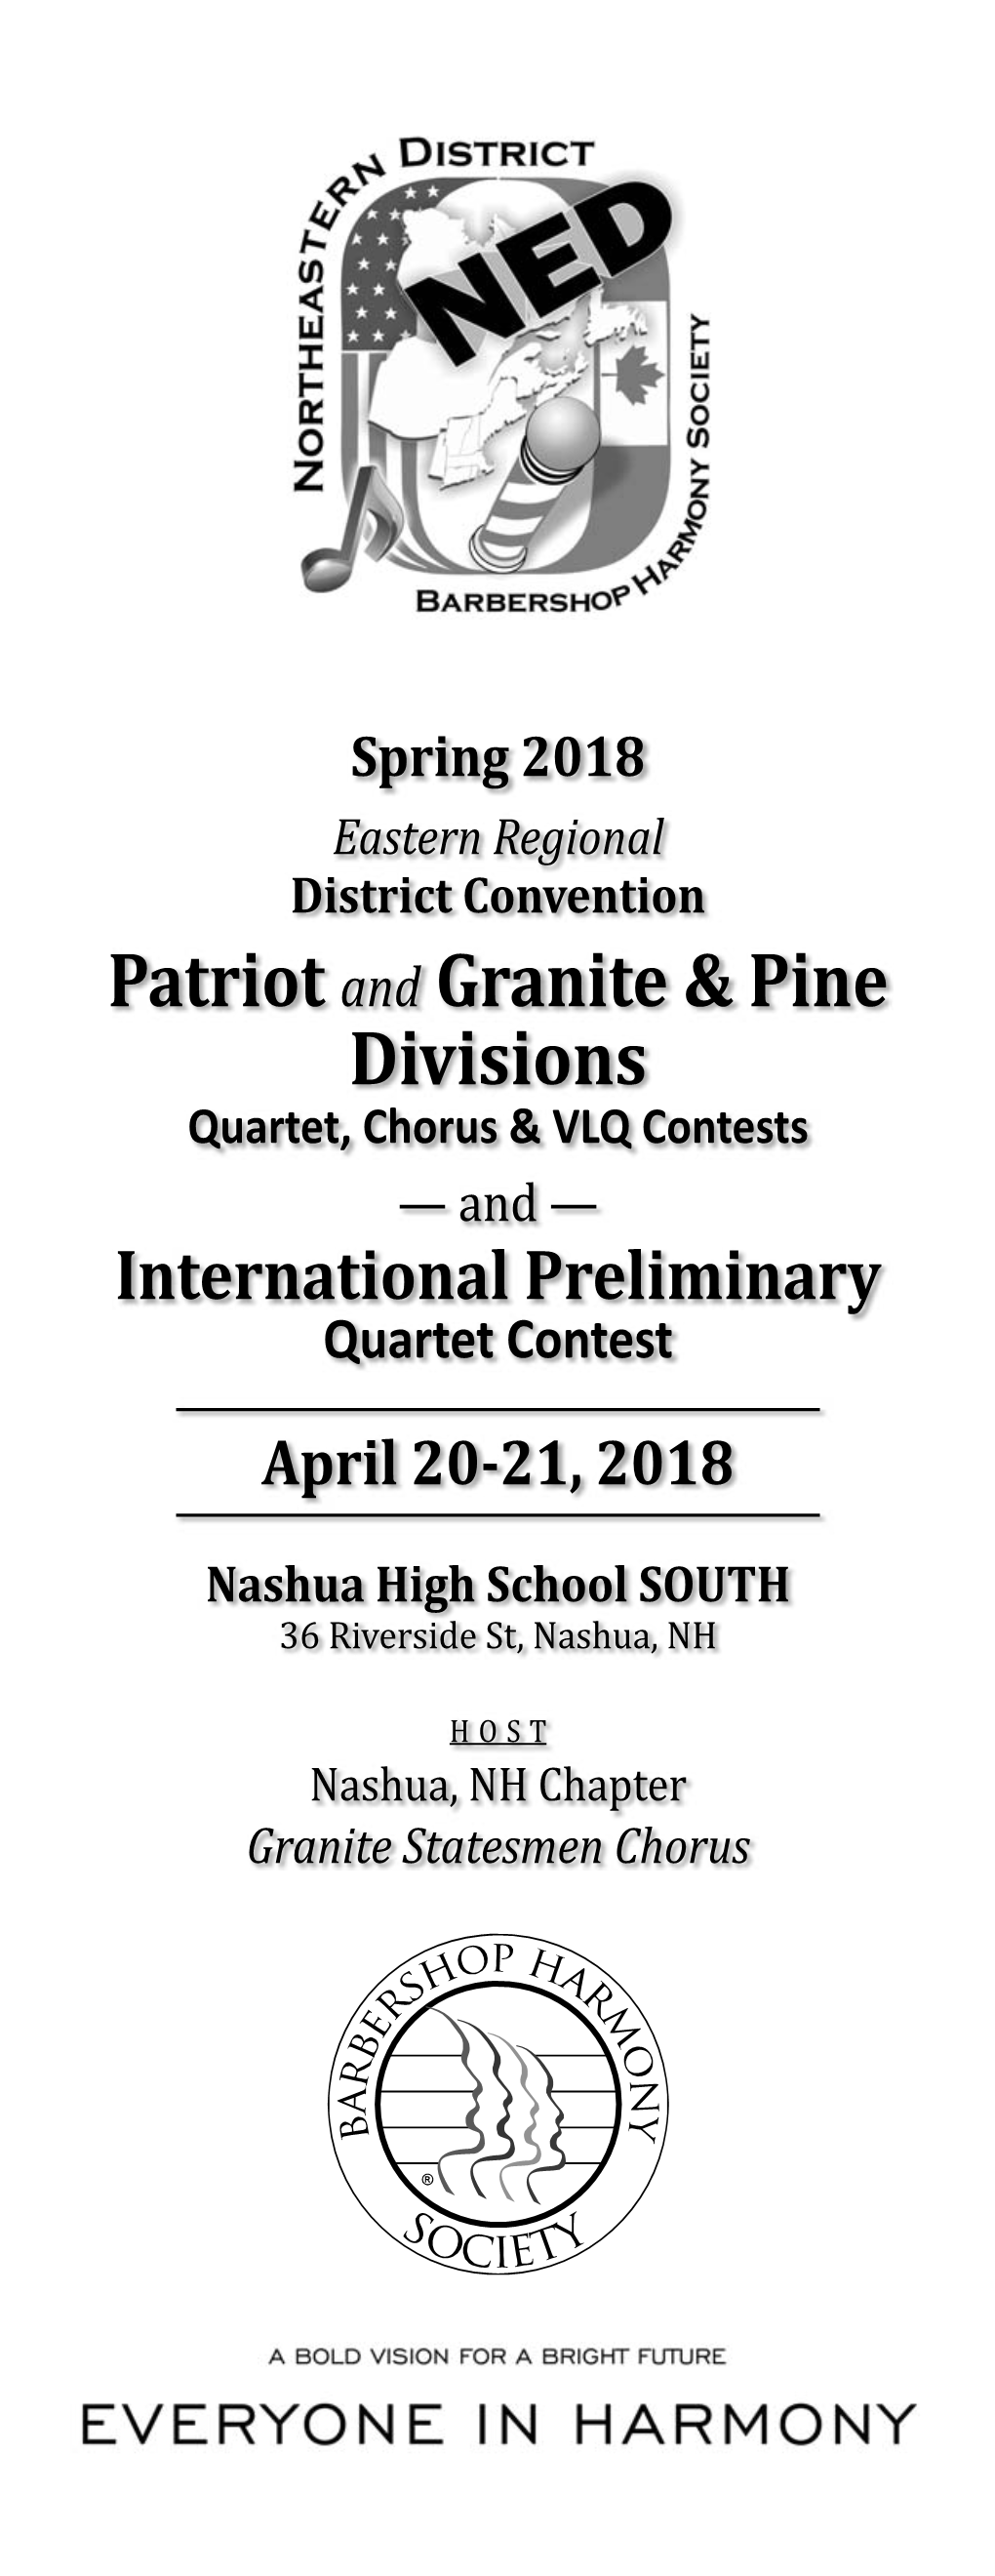 Patriot and Granite & Pine Divisions